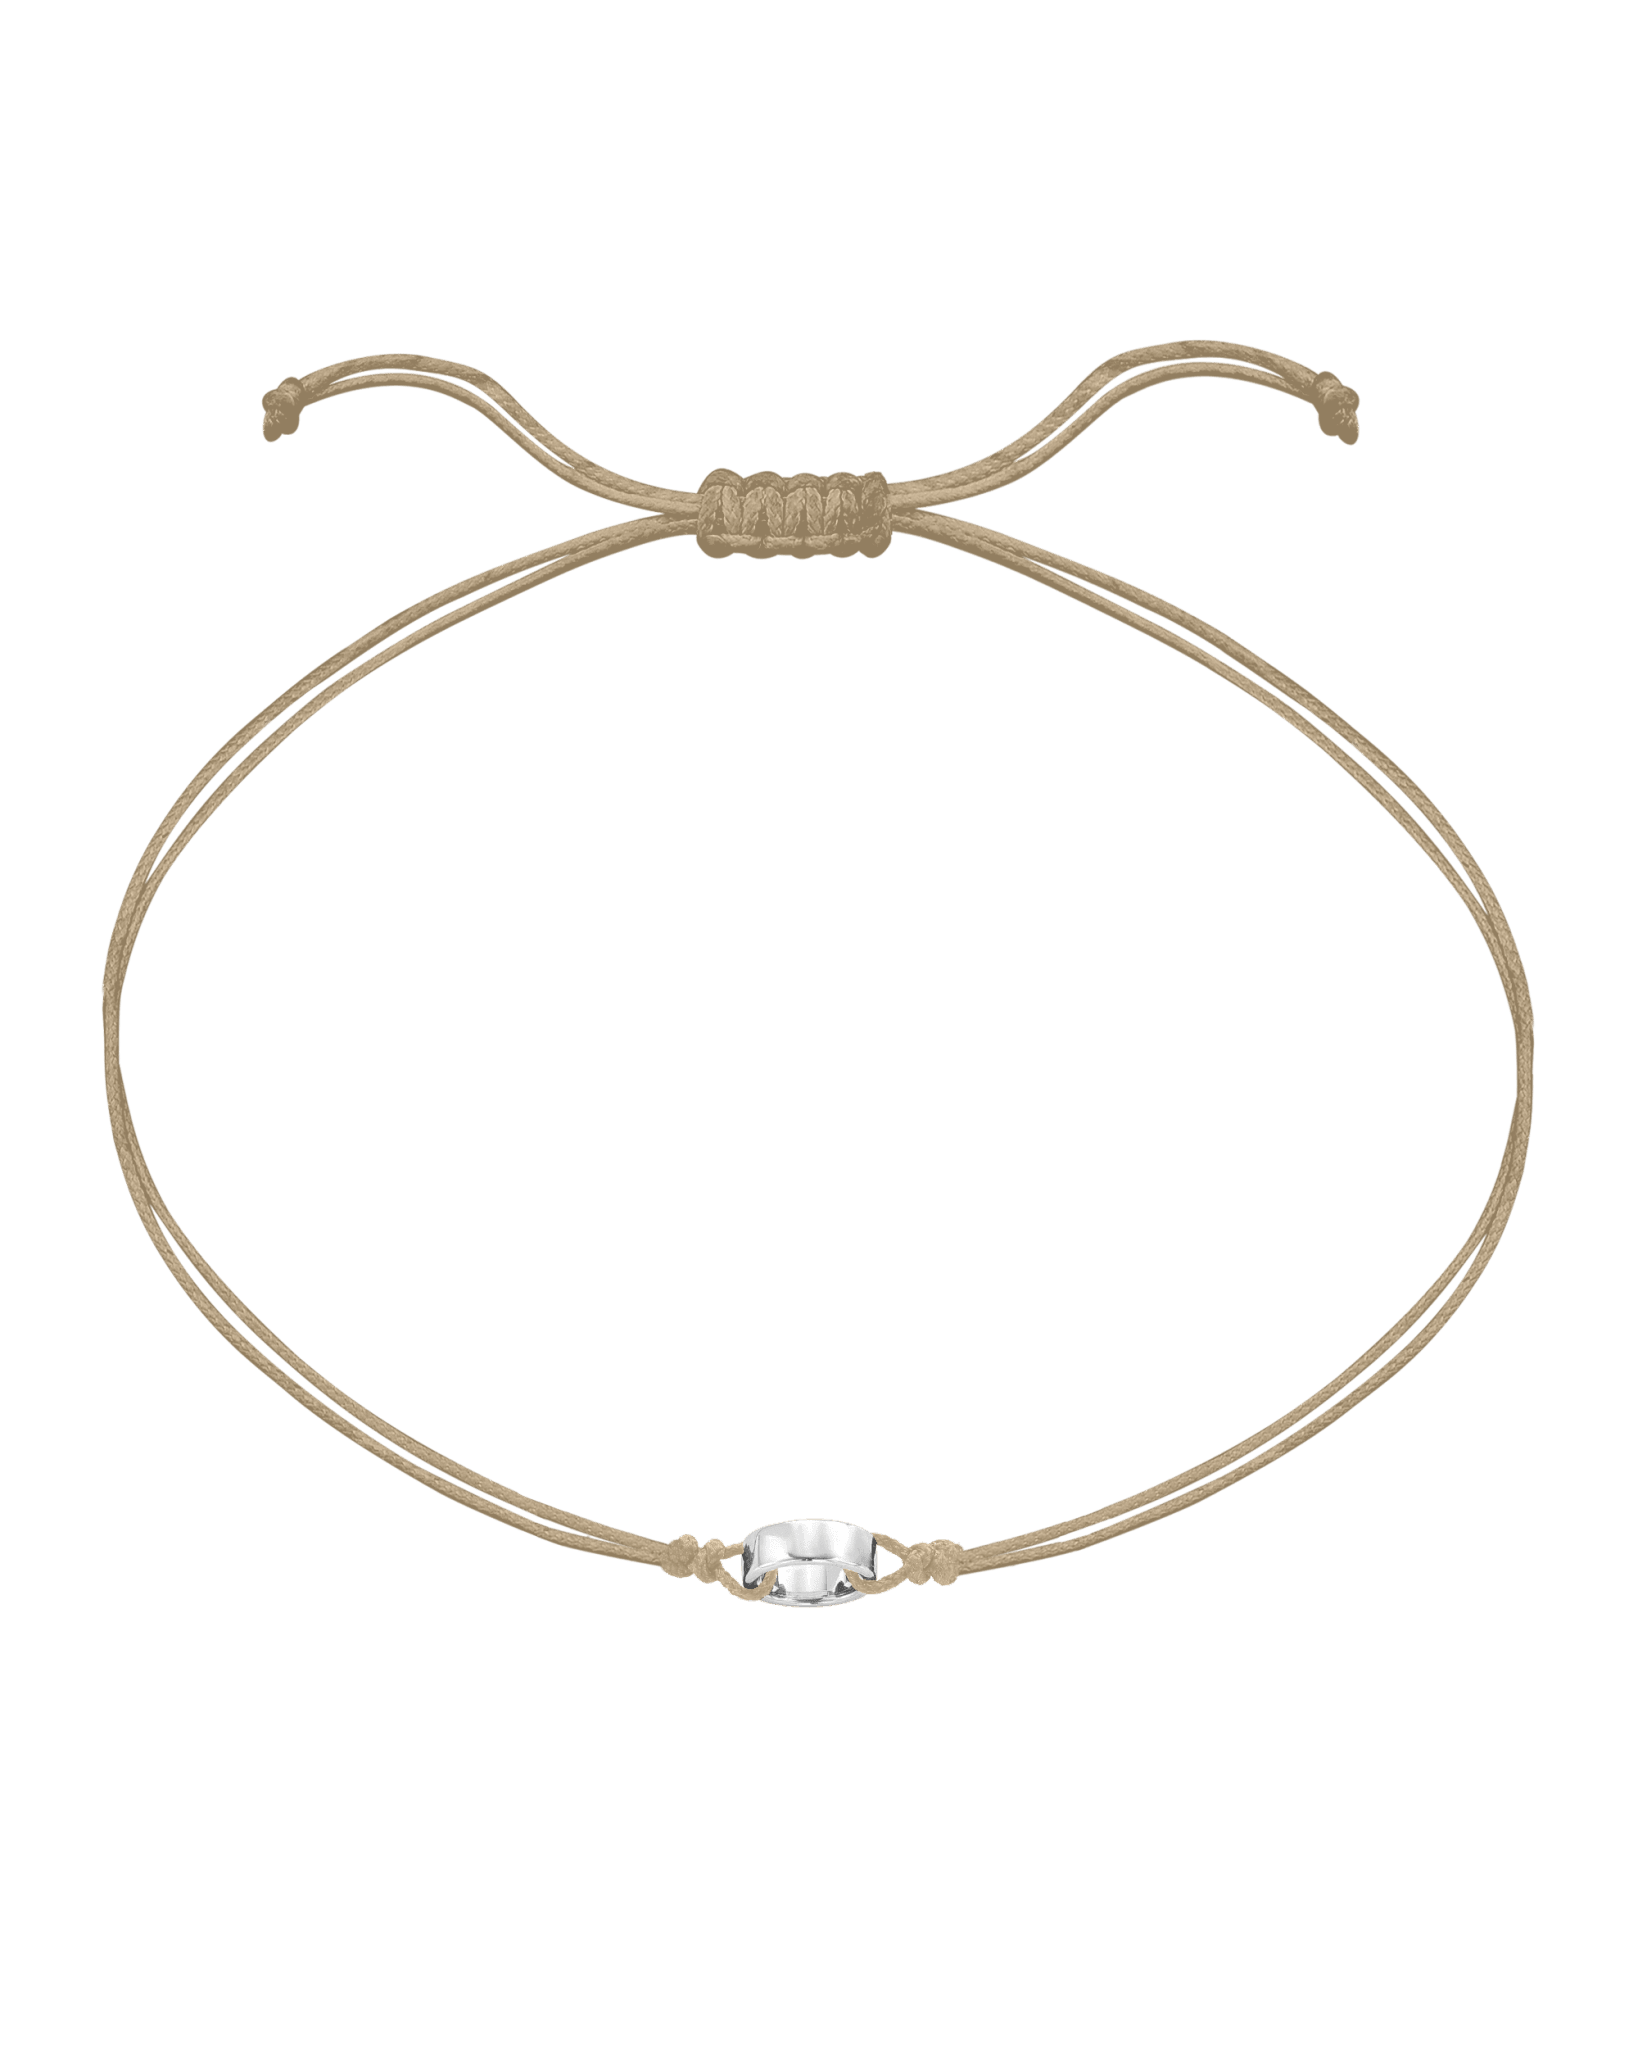 Engravable Links of Love - 925 Sterling Silver Bracelets magal-dev 1 Beige 